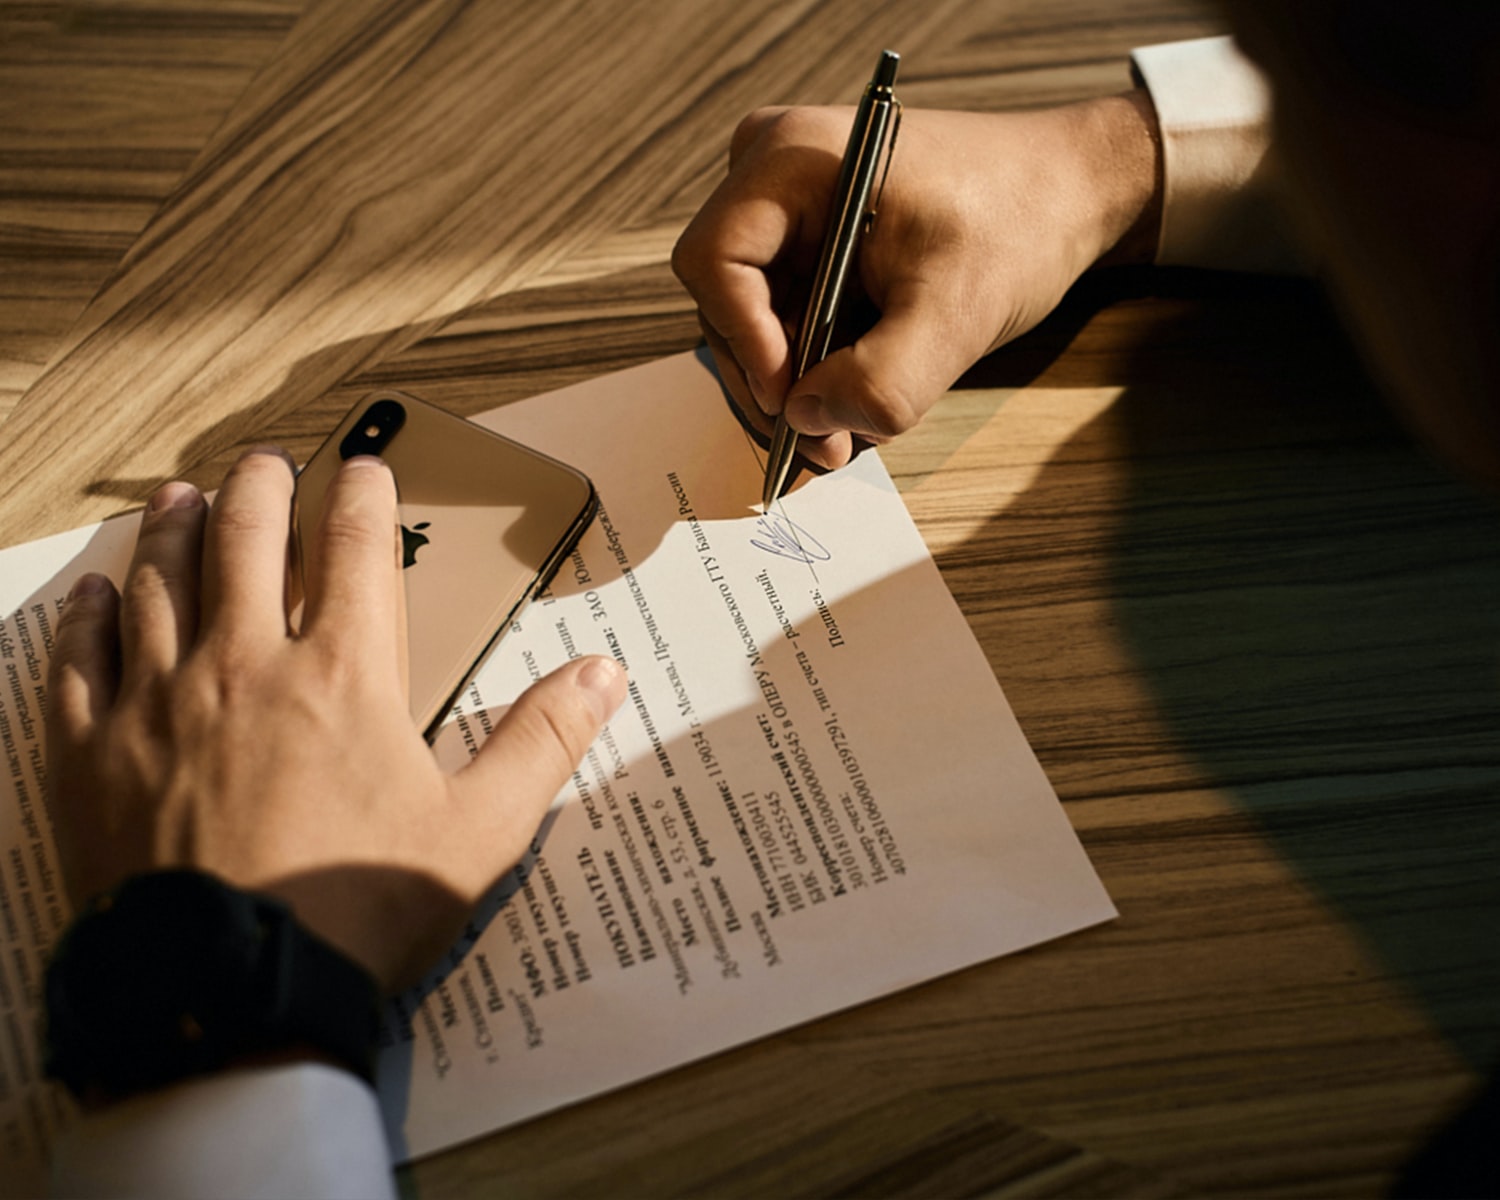 Testimonio de legitimación de firmas del artículo 207 del Reglamento notarial